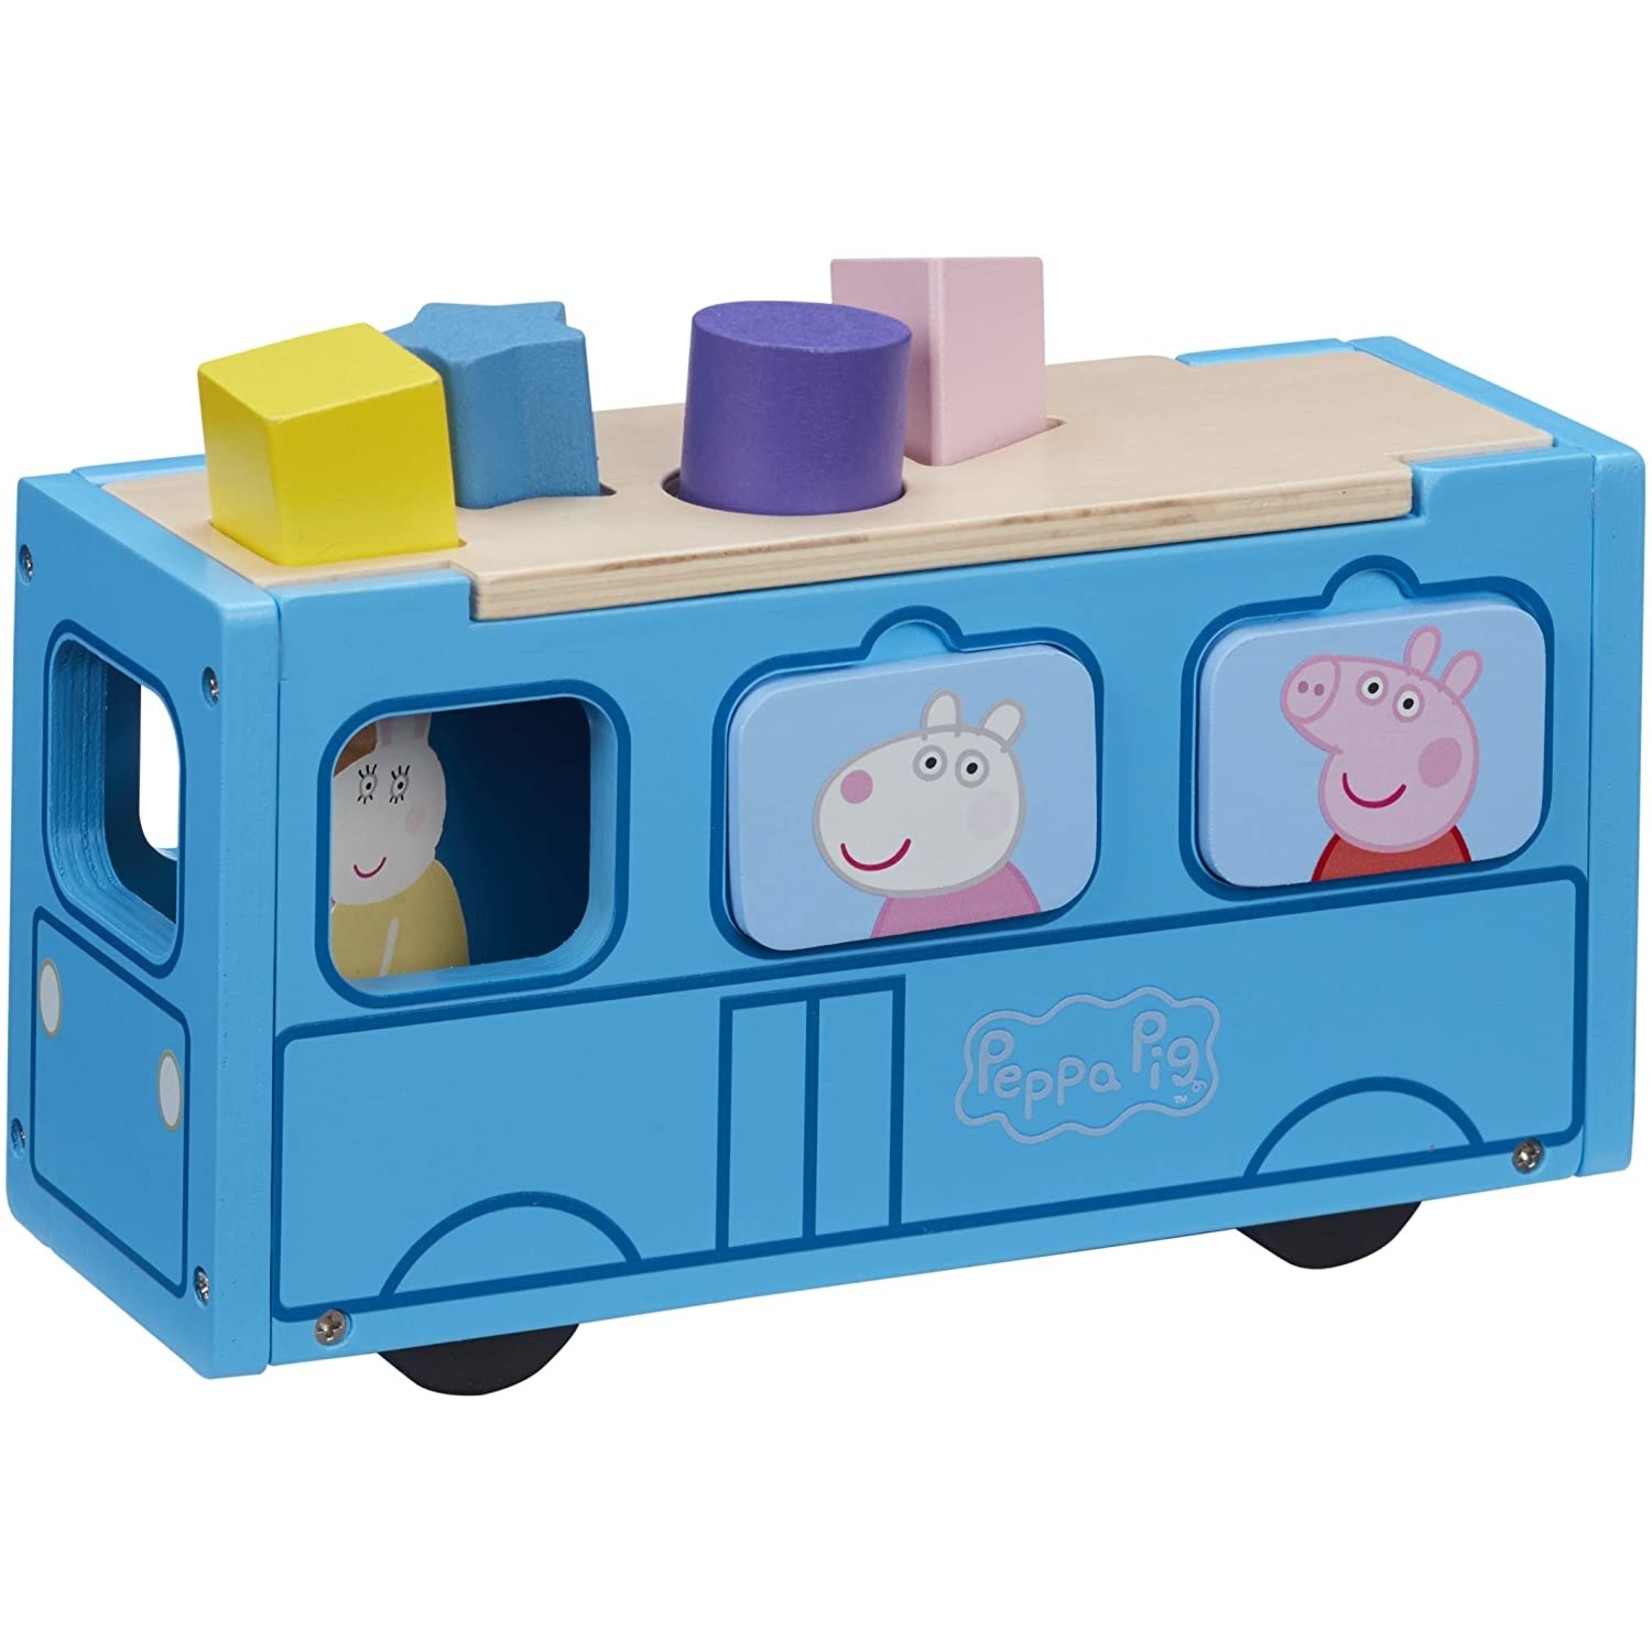 Peppa Pig's Houten Schoolbus